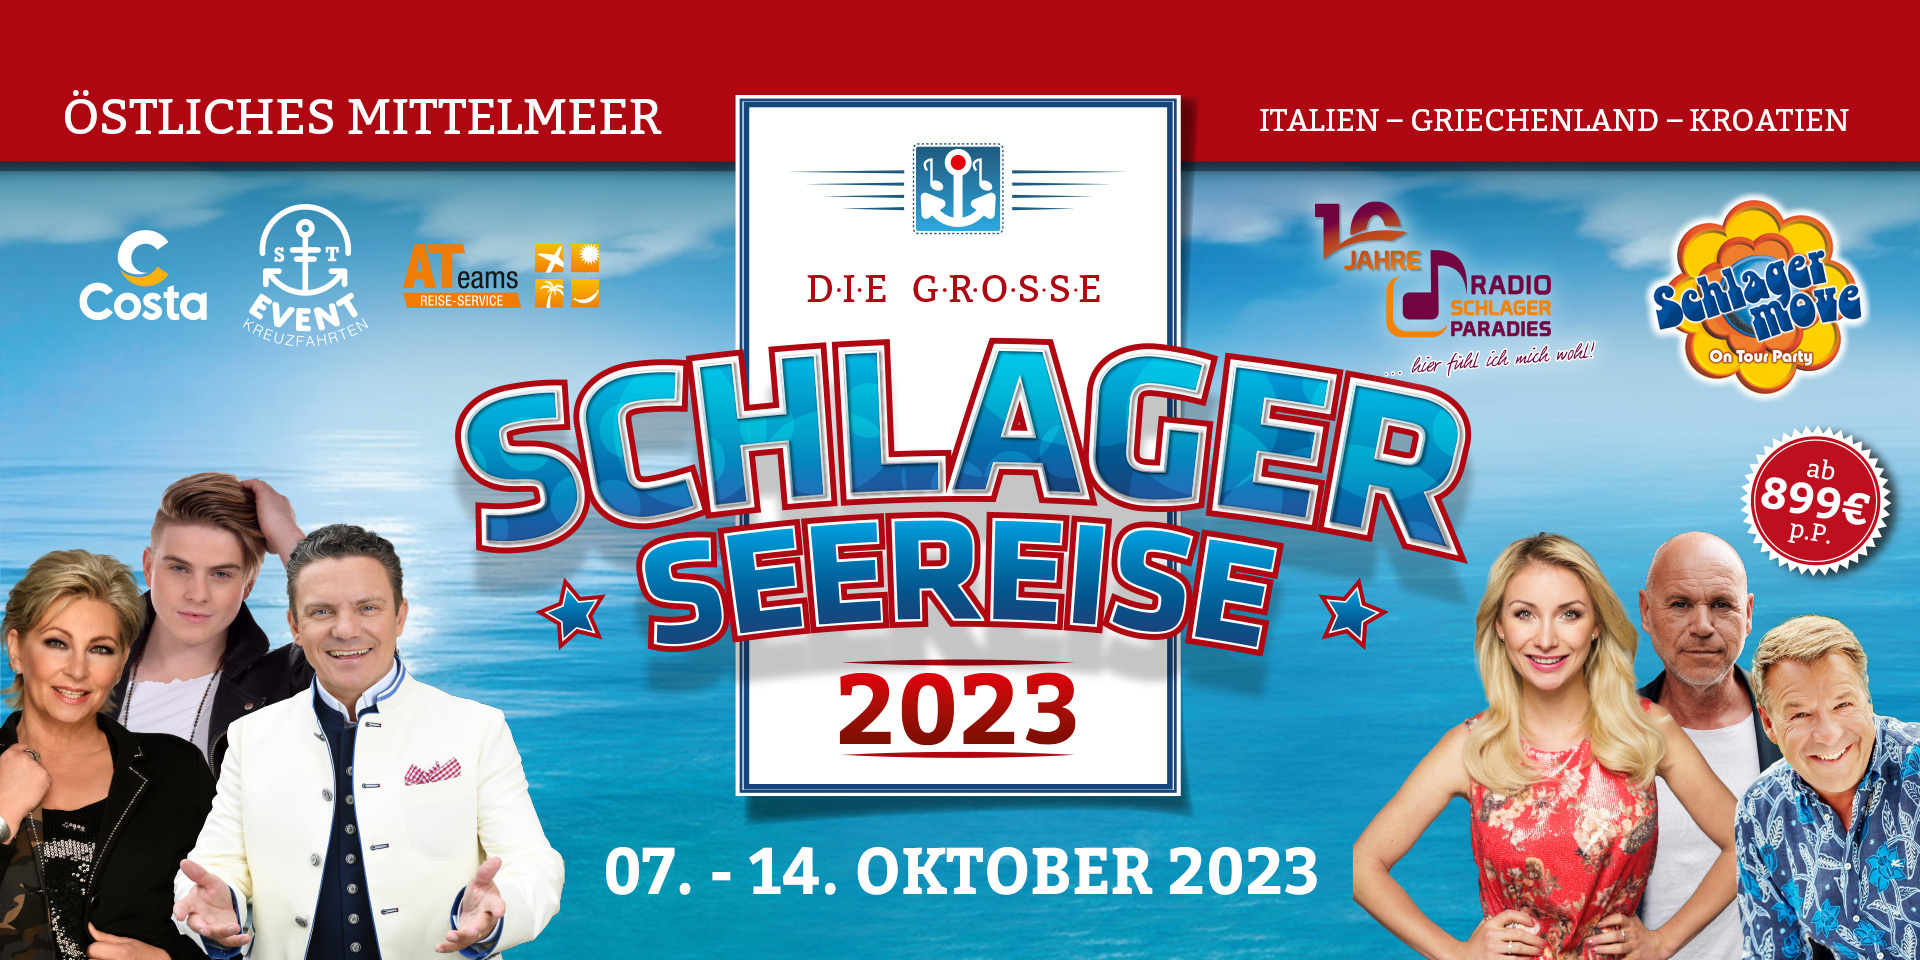 Im Oktober 2023 erwartet Euch „Die große Schlager-Seereise 2023“